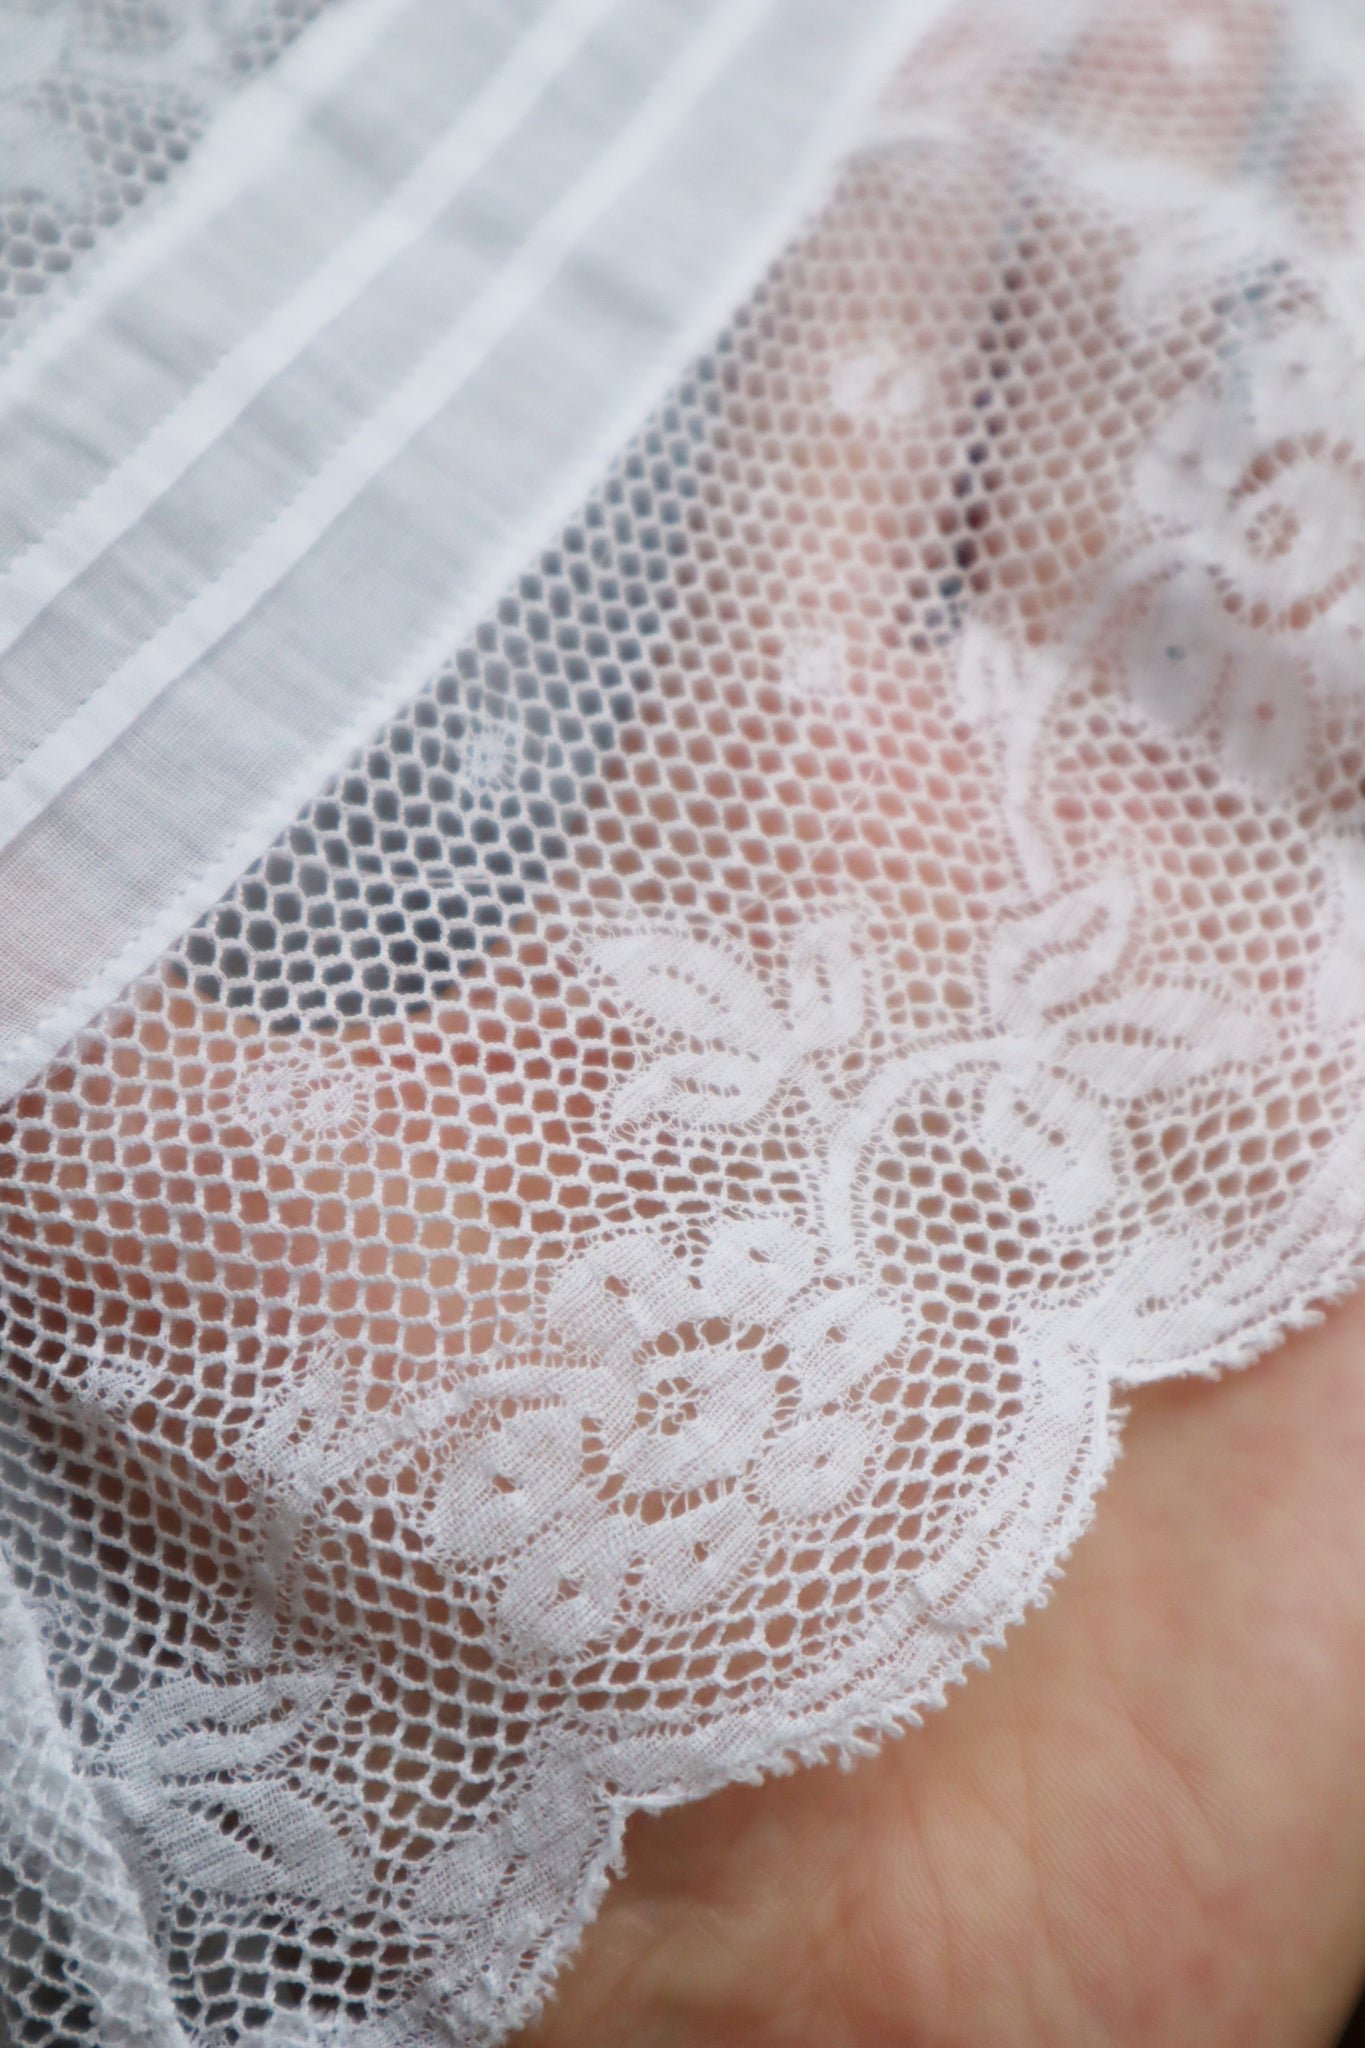 1910s Antique Lace Lingerie Dress